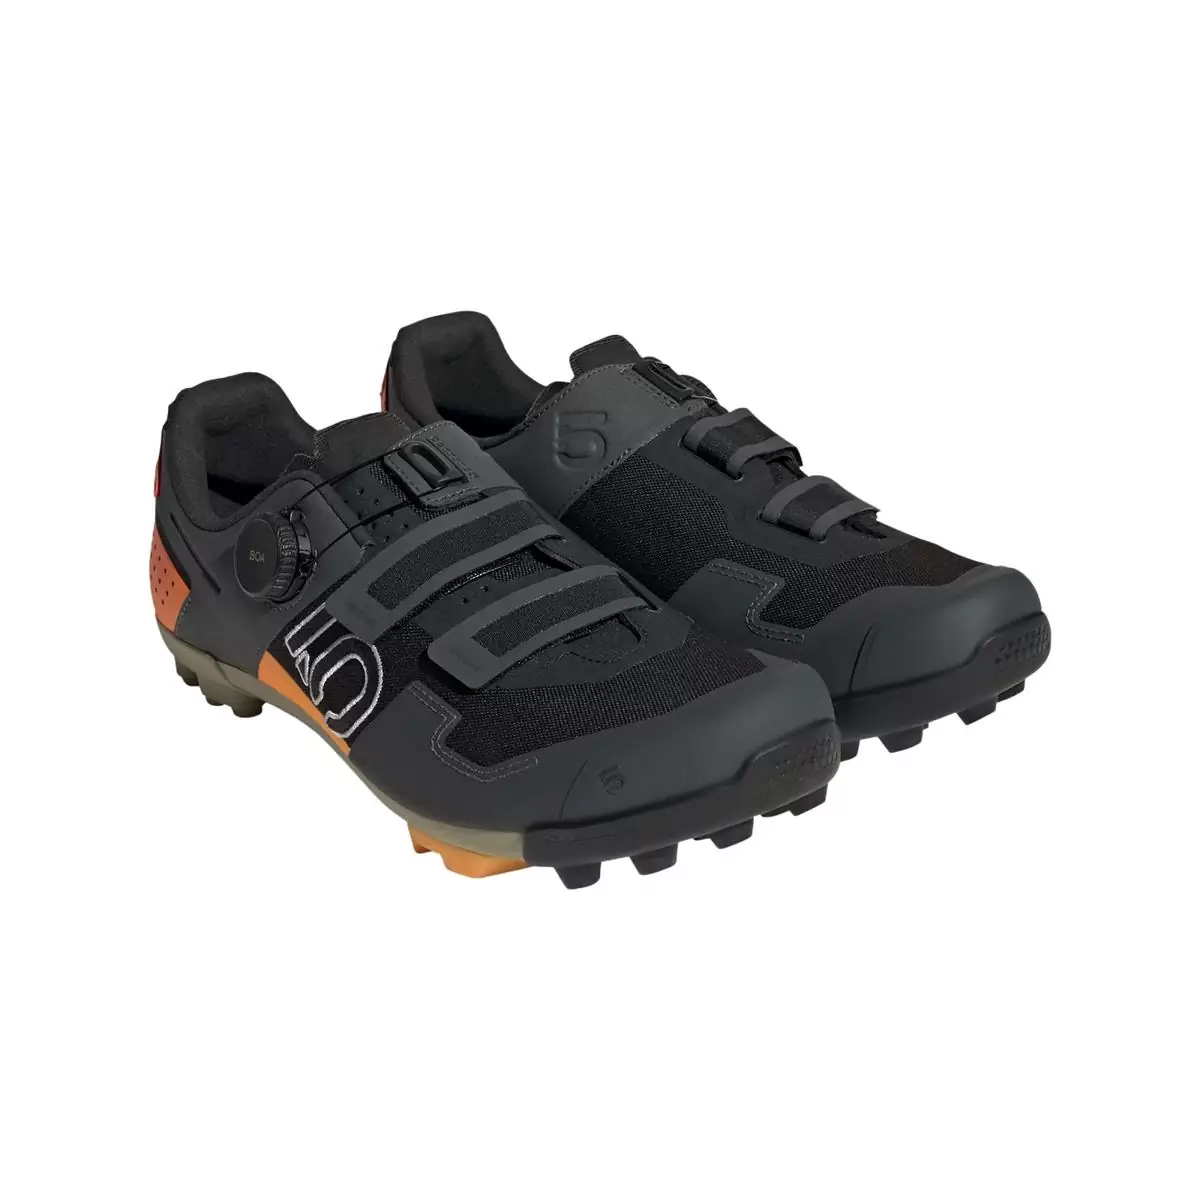 Clip 5.10 Kestrel Boa MTB Shoes Black/Orange Size 41 #1